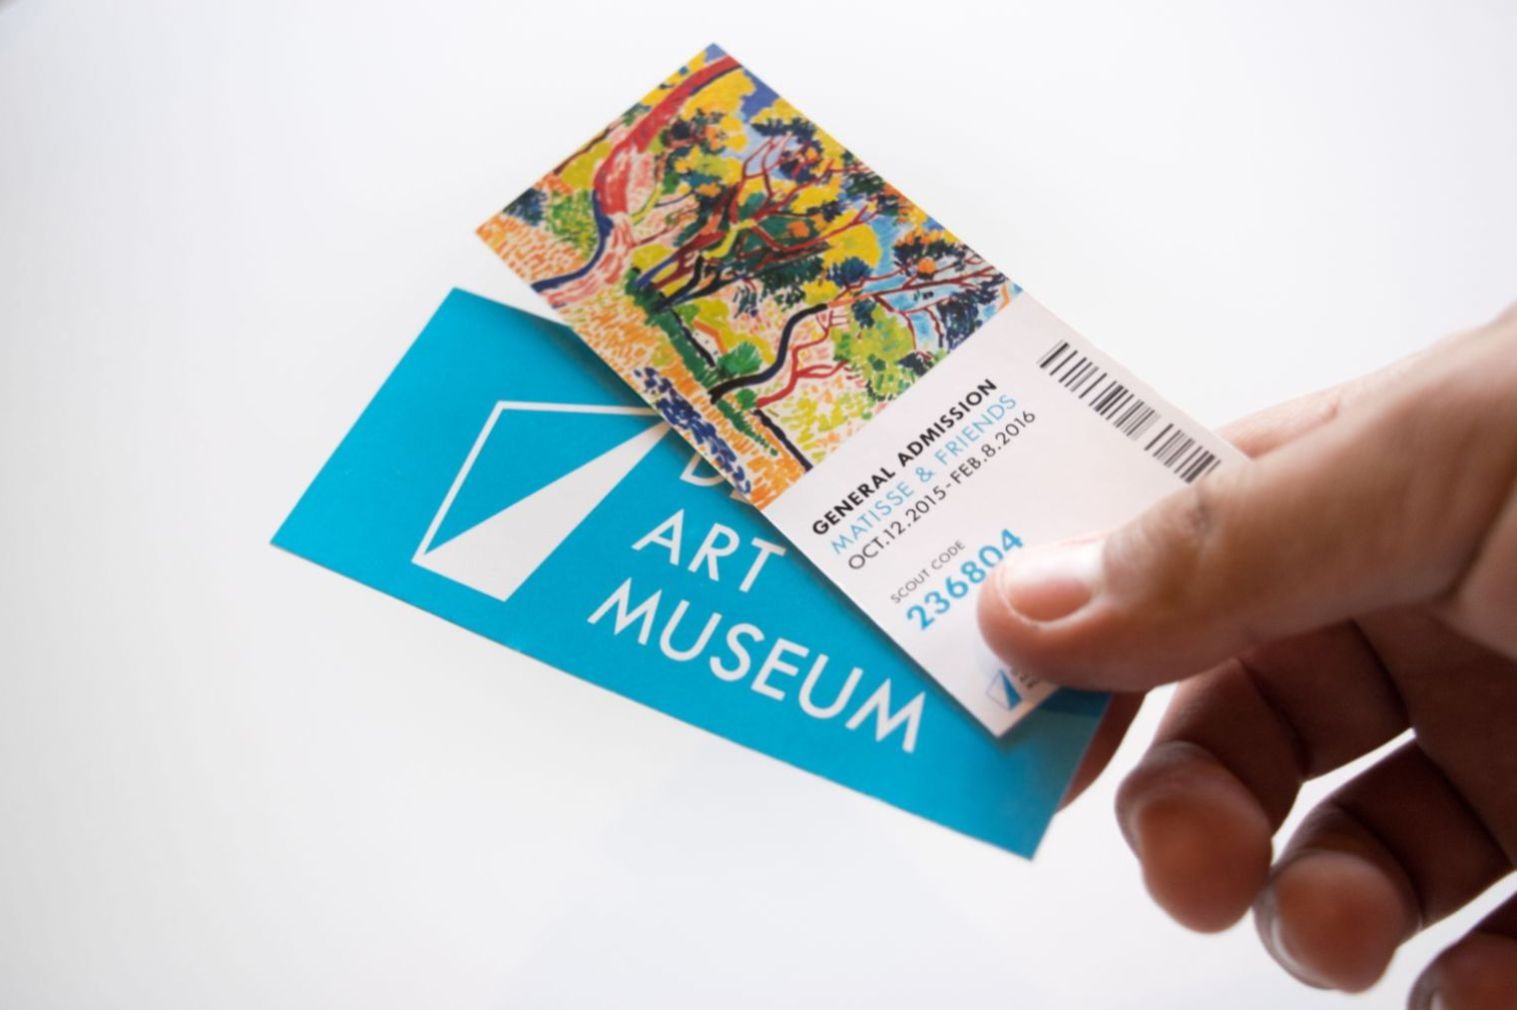 Come risparmiare sul biglietto visitando i musei - Portale invernale